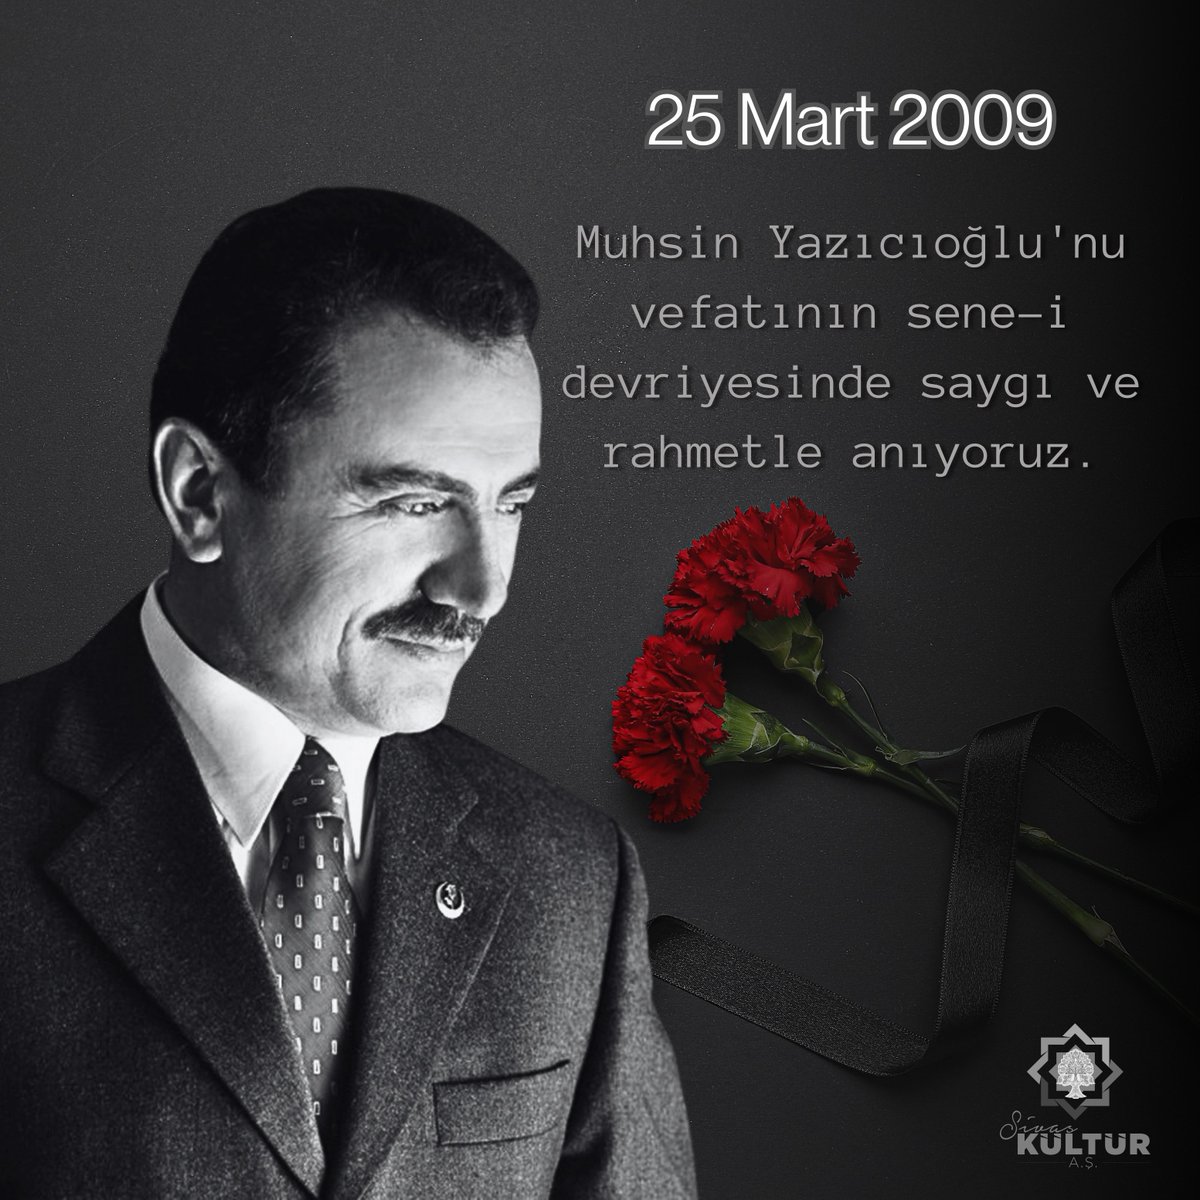 Muhsin Yazıcıoğlu'nu vefatının sene-i devriyesinde saygı ve rahmetle anıyoruz. #25Mart2009